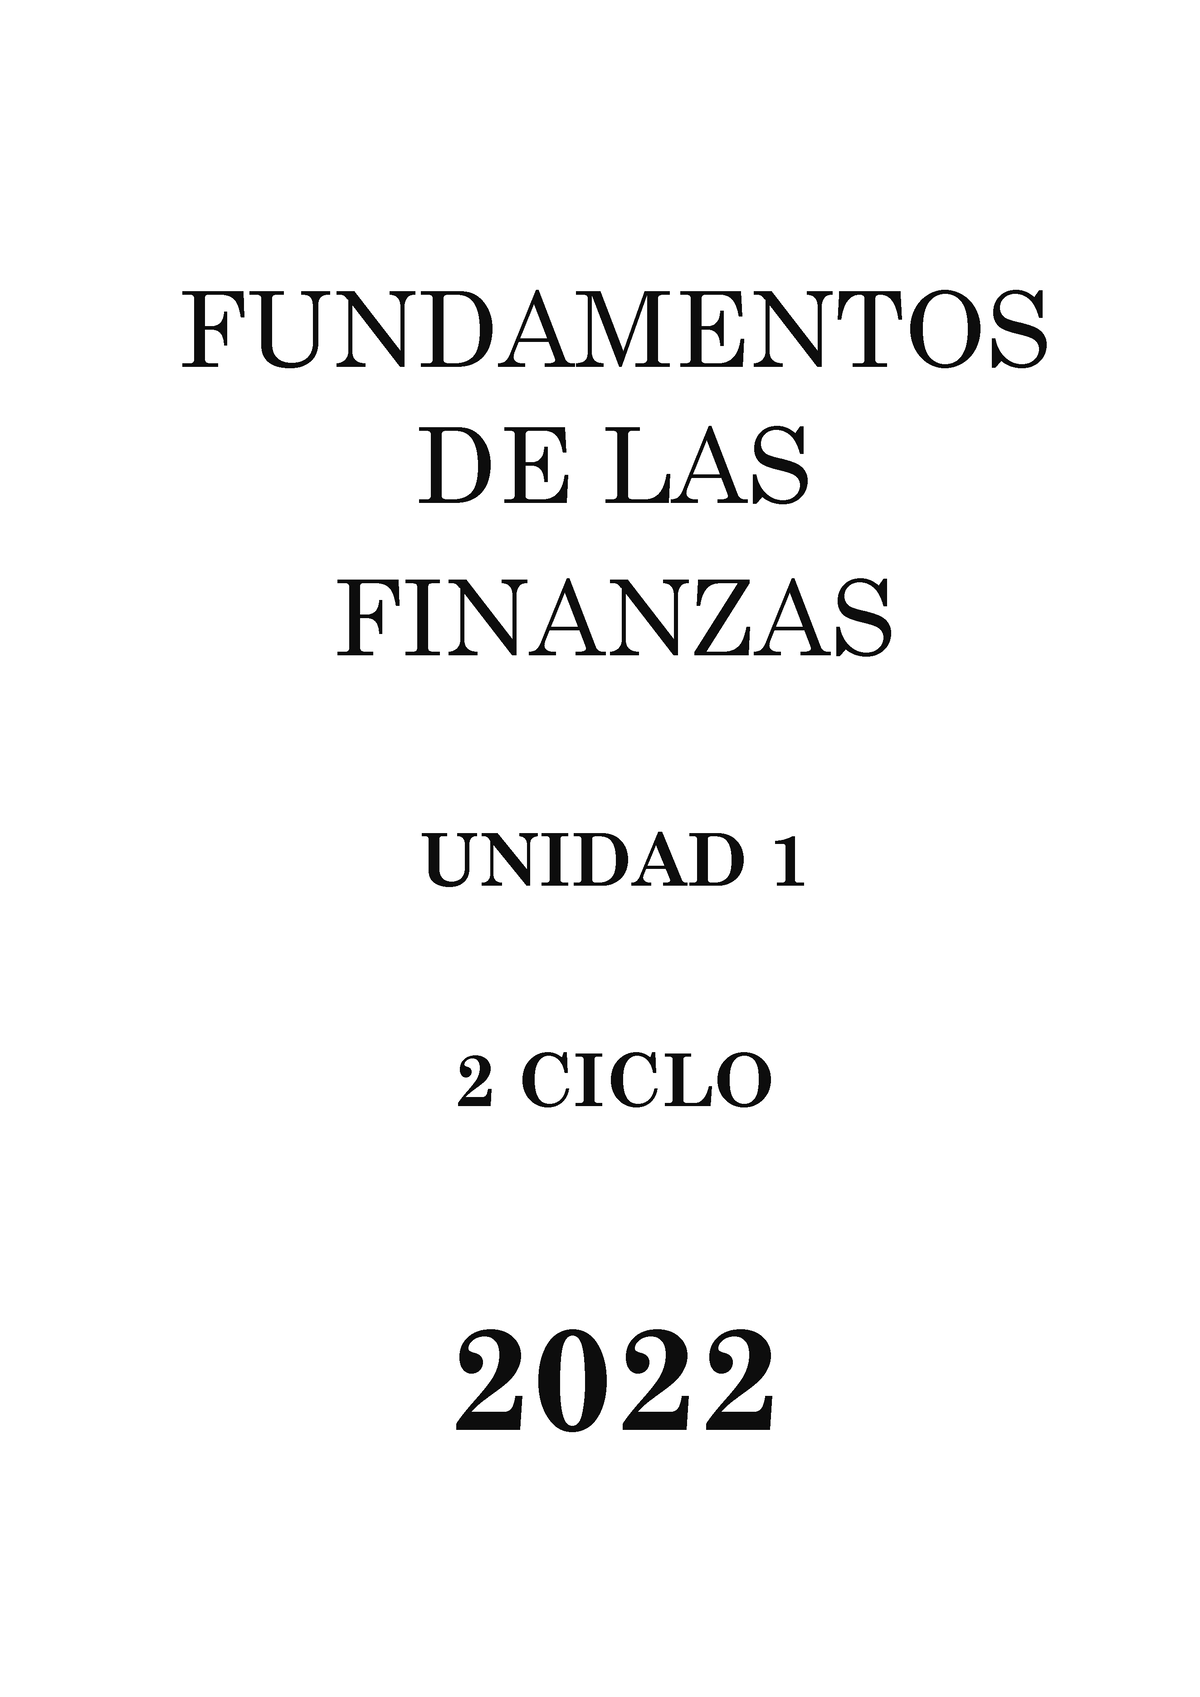 Fundamentos De Las Finanzas Fundamentos De Las Finanzas Unidad 1 2 Ciclo 2022 Unidad 1 Semana 5882